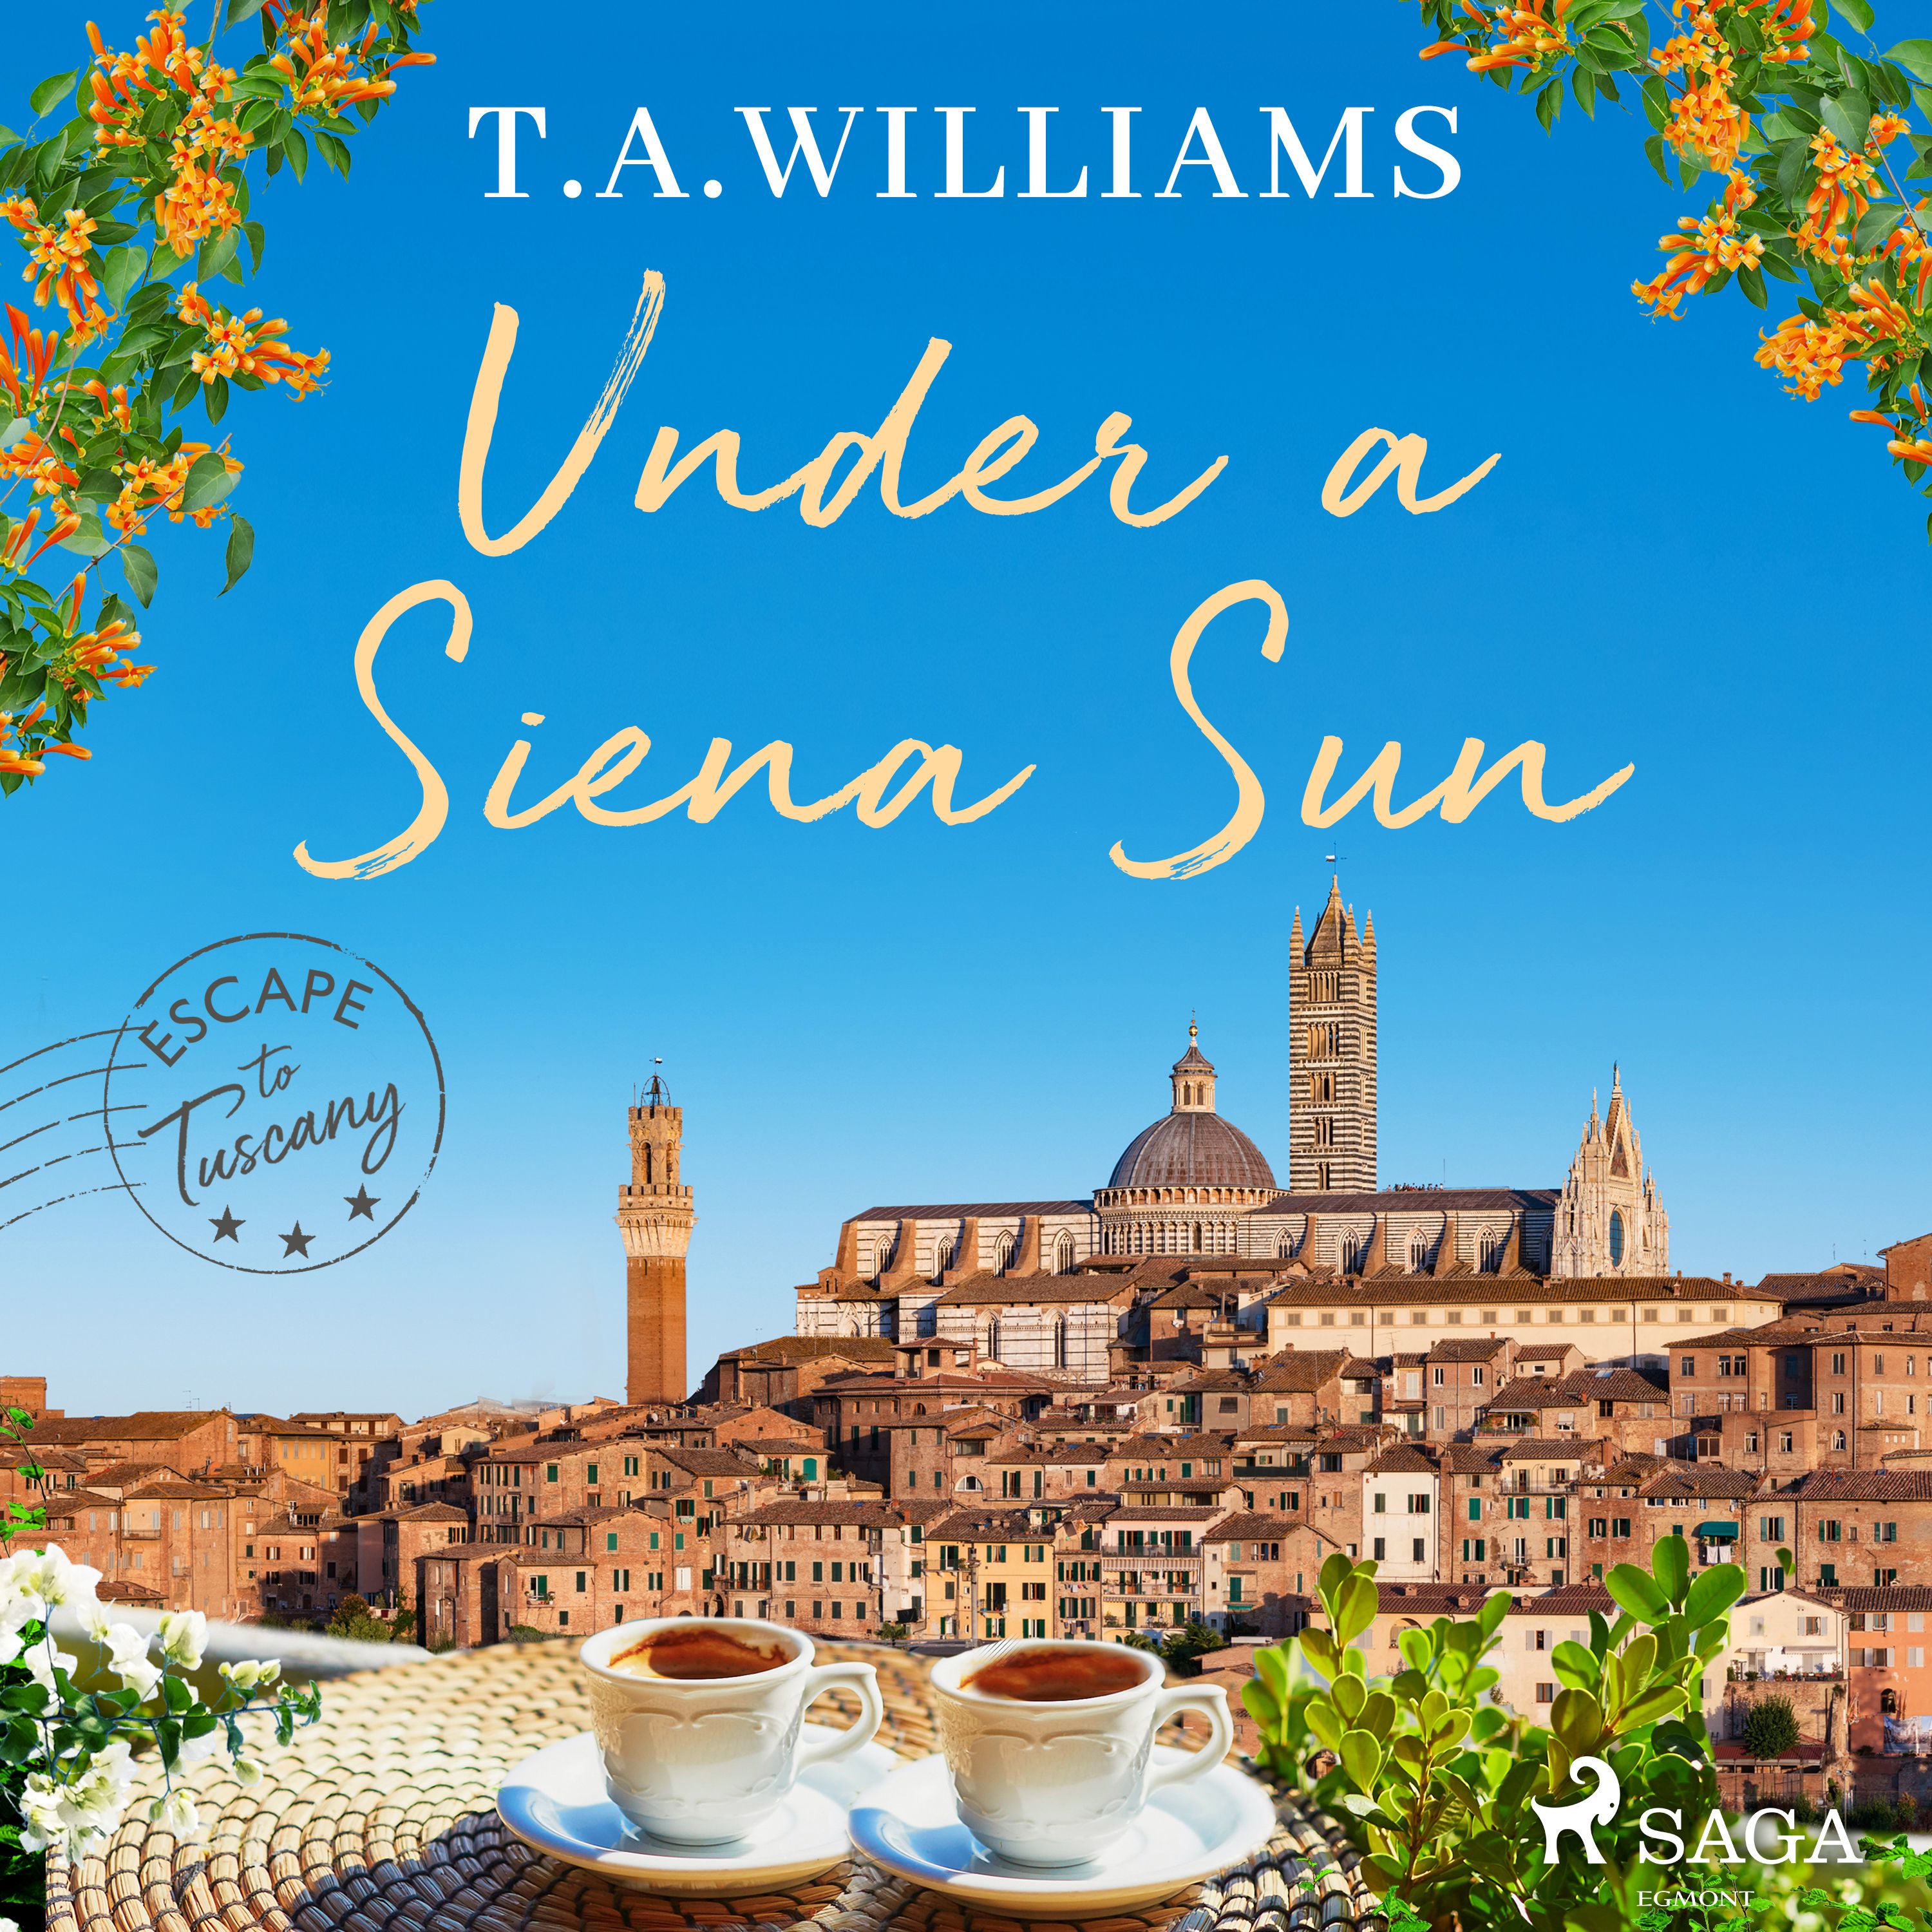 Under a Siena Sun, ljudbok av T.A. Williams